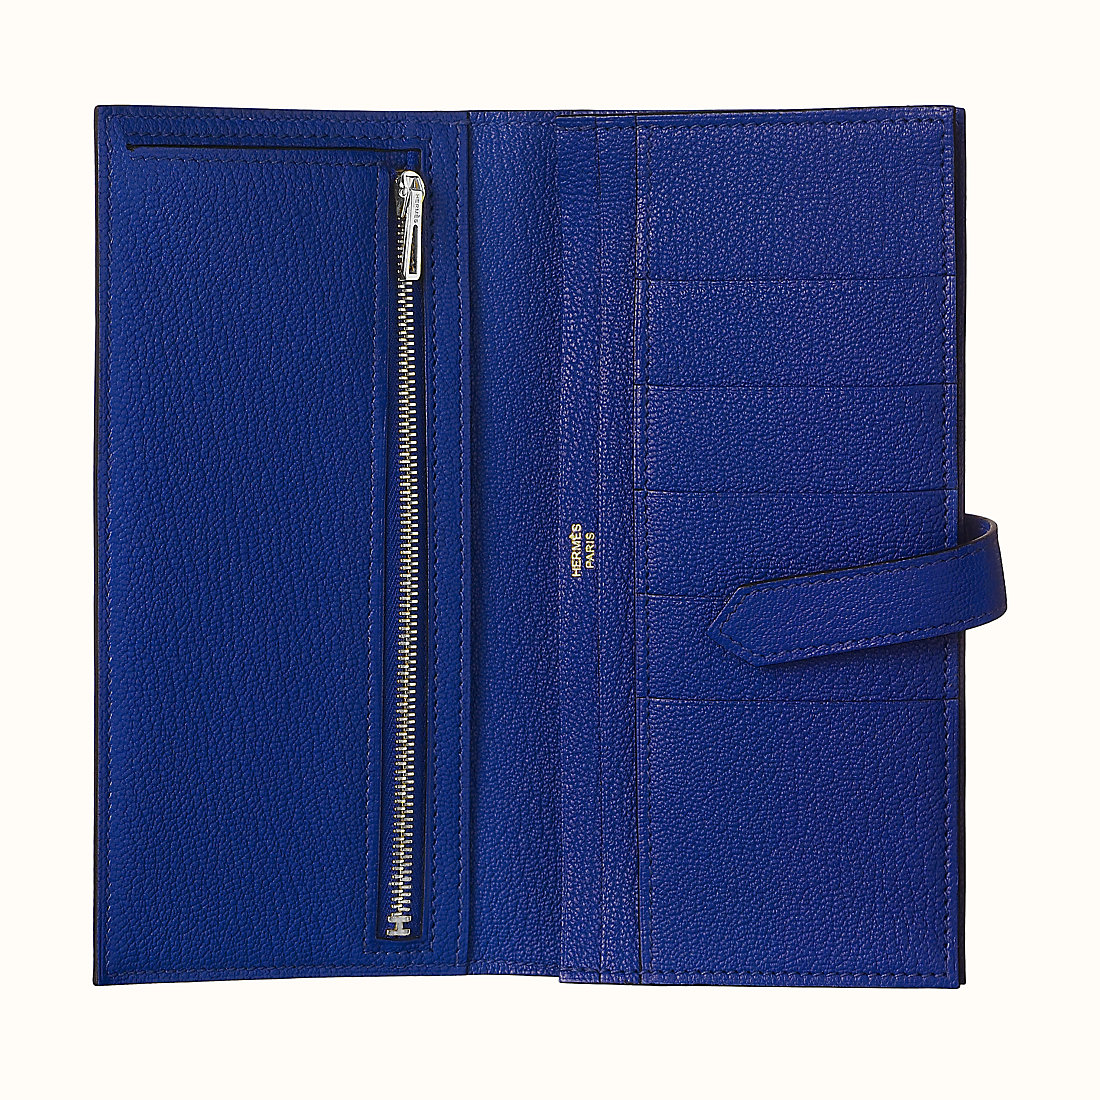 臺灣臺南市 Hermes Bearn wallet CKM3 Bleu Encre 墨水藍山羊皮